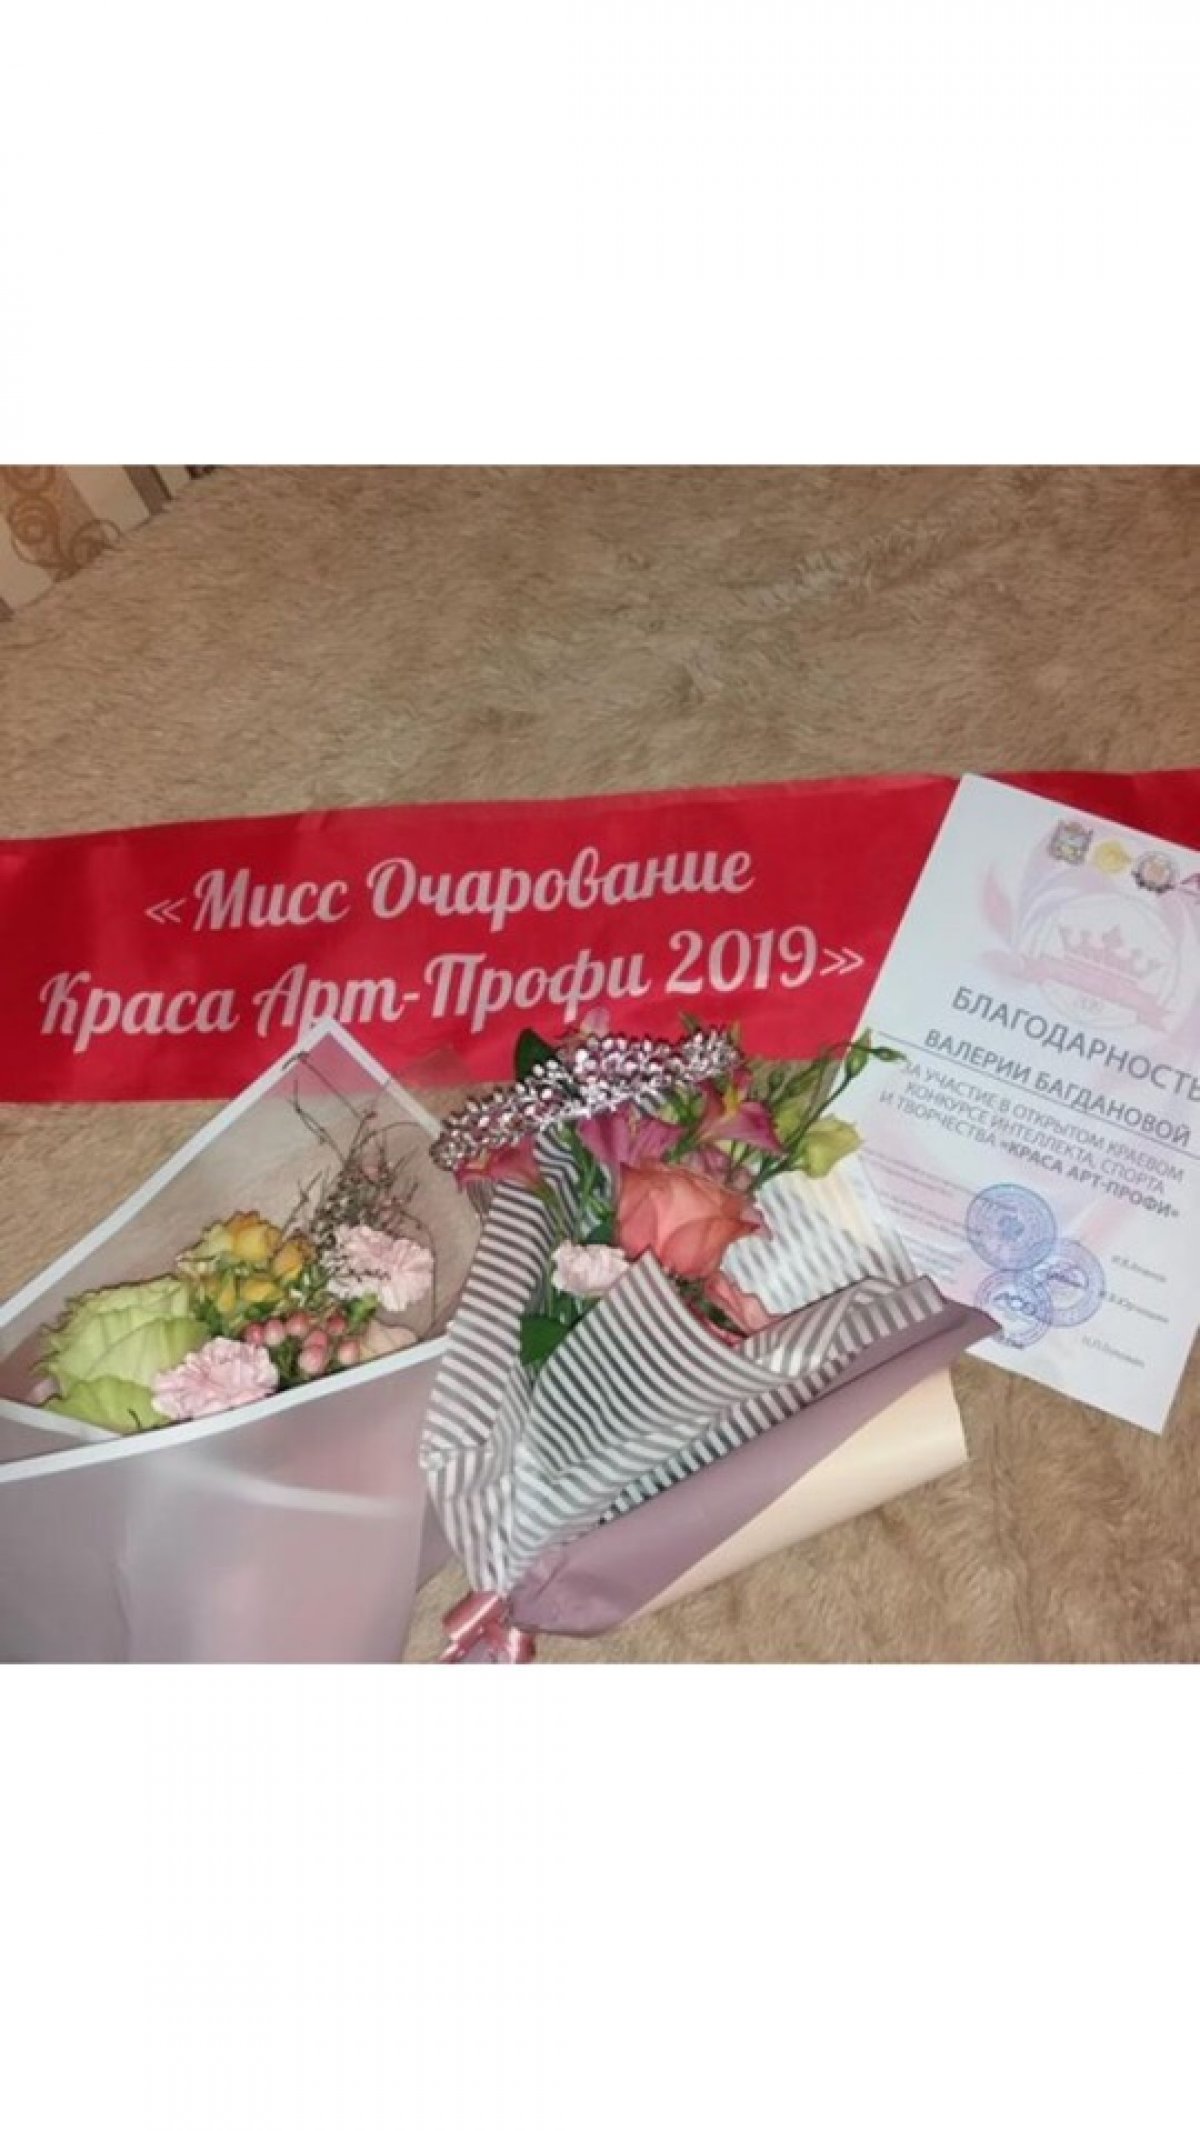 🌸Долгожданный открытый краевой конкурс интеллекта, спорта и творчества «Краса Арт-Профи 2019» подошёл к концу!